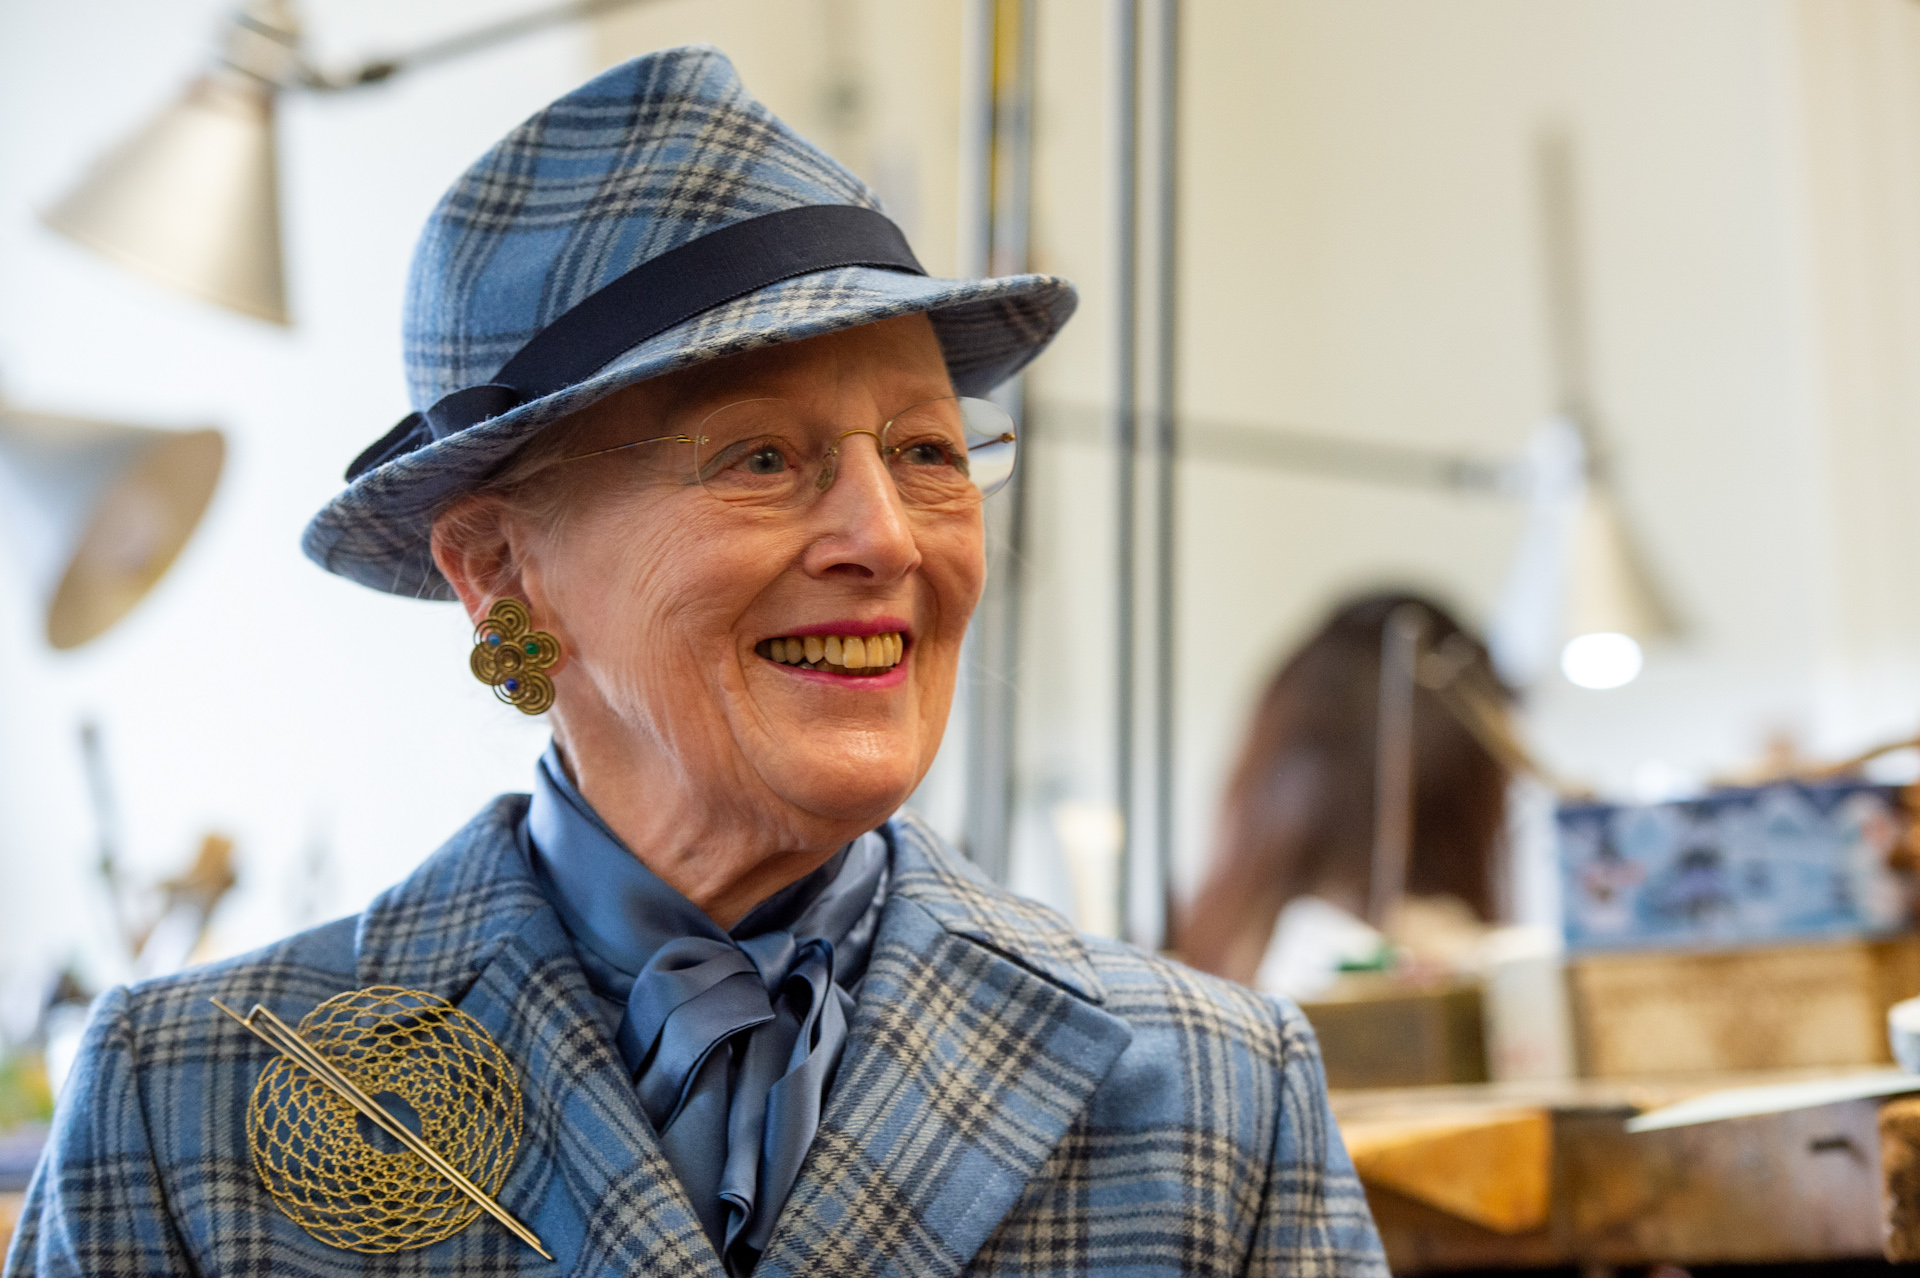 <p>Las mejores fotos de la Reina Margrethe II<br>  </p>